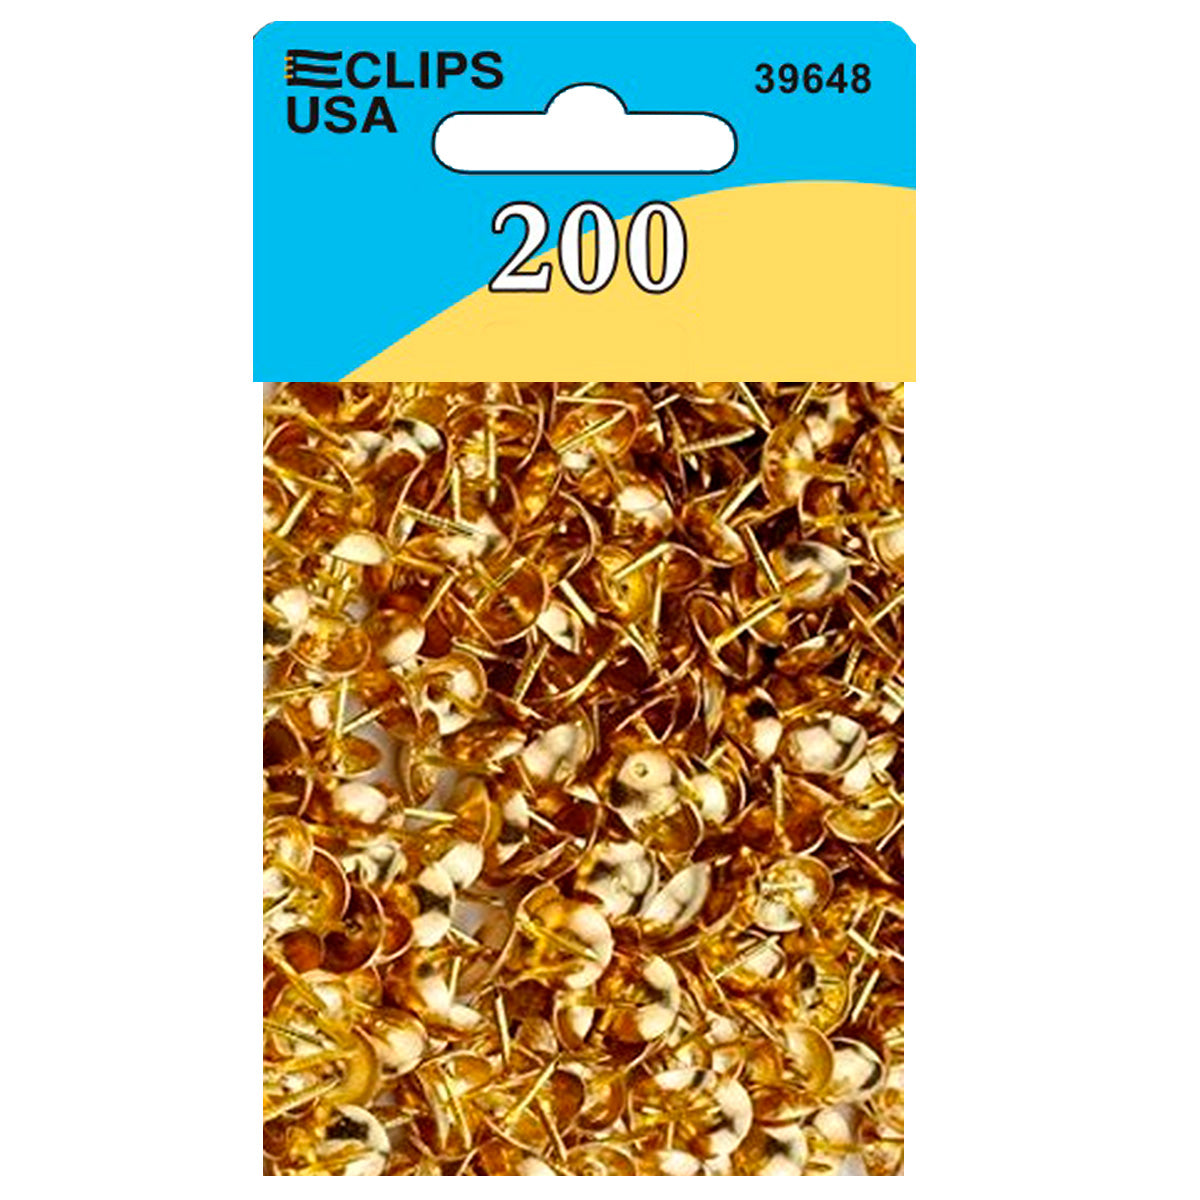 39648: Gold Thumb Tacks - 200 Pack